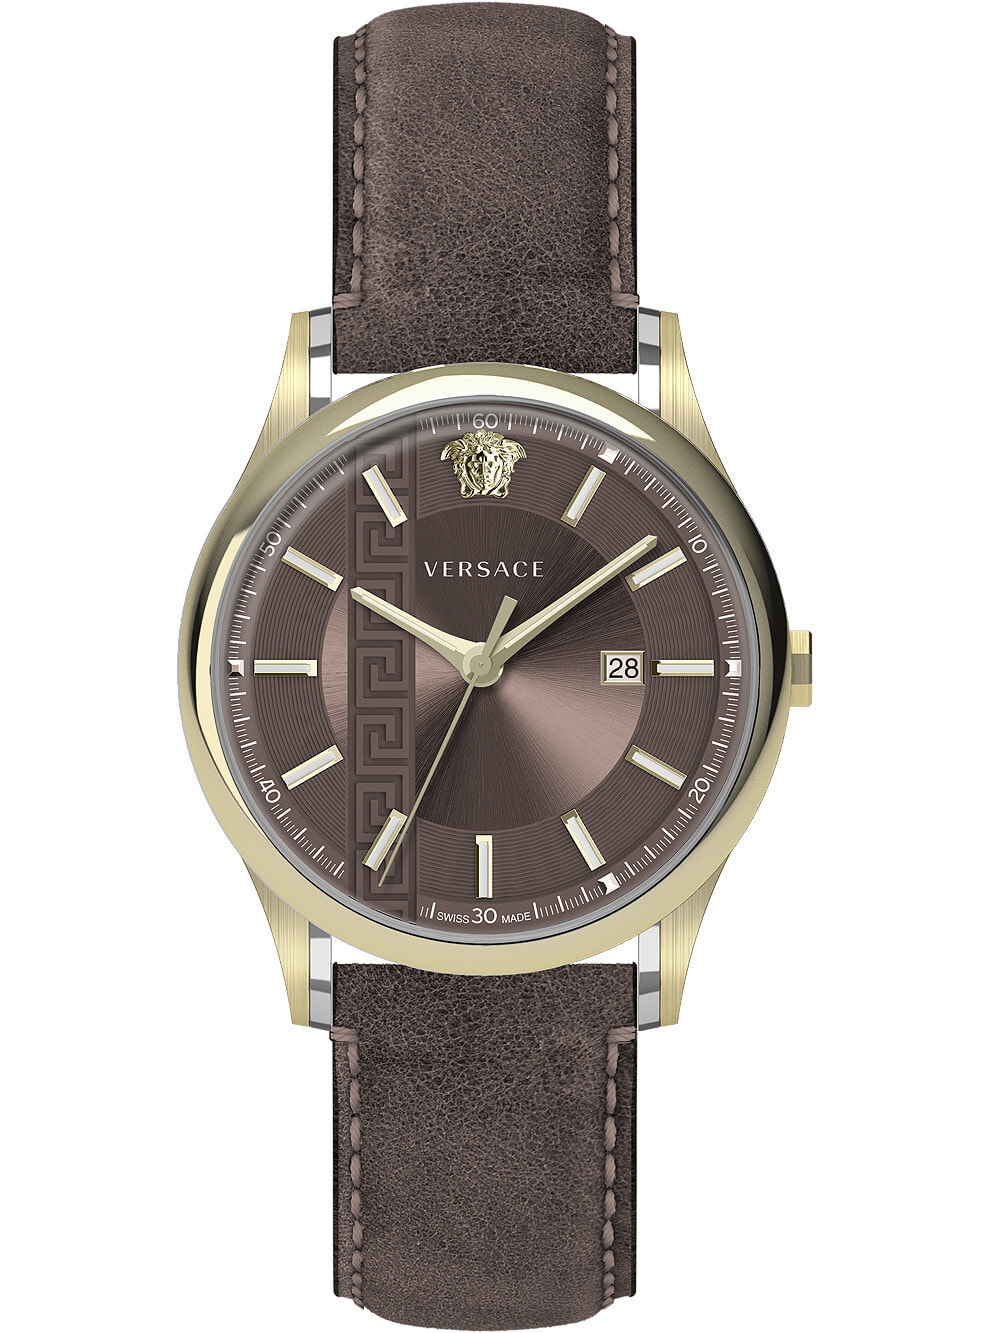 Мужские наручные часы с коричневым кожаным ремешком Versace VE4A00320 Aiakos mens 44mm 5ATM